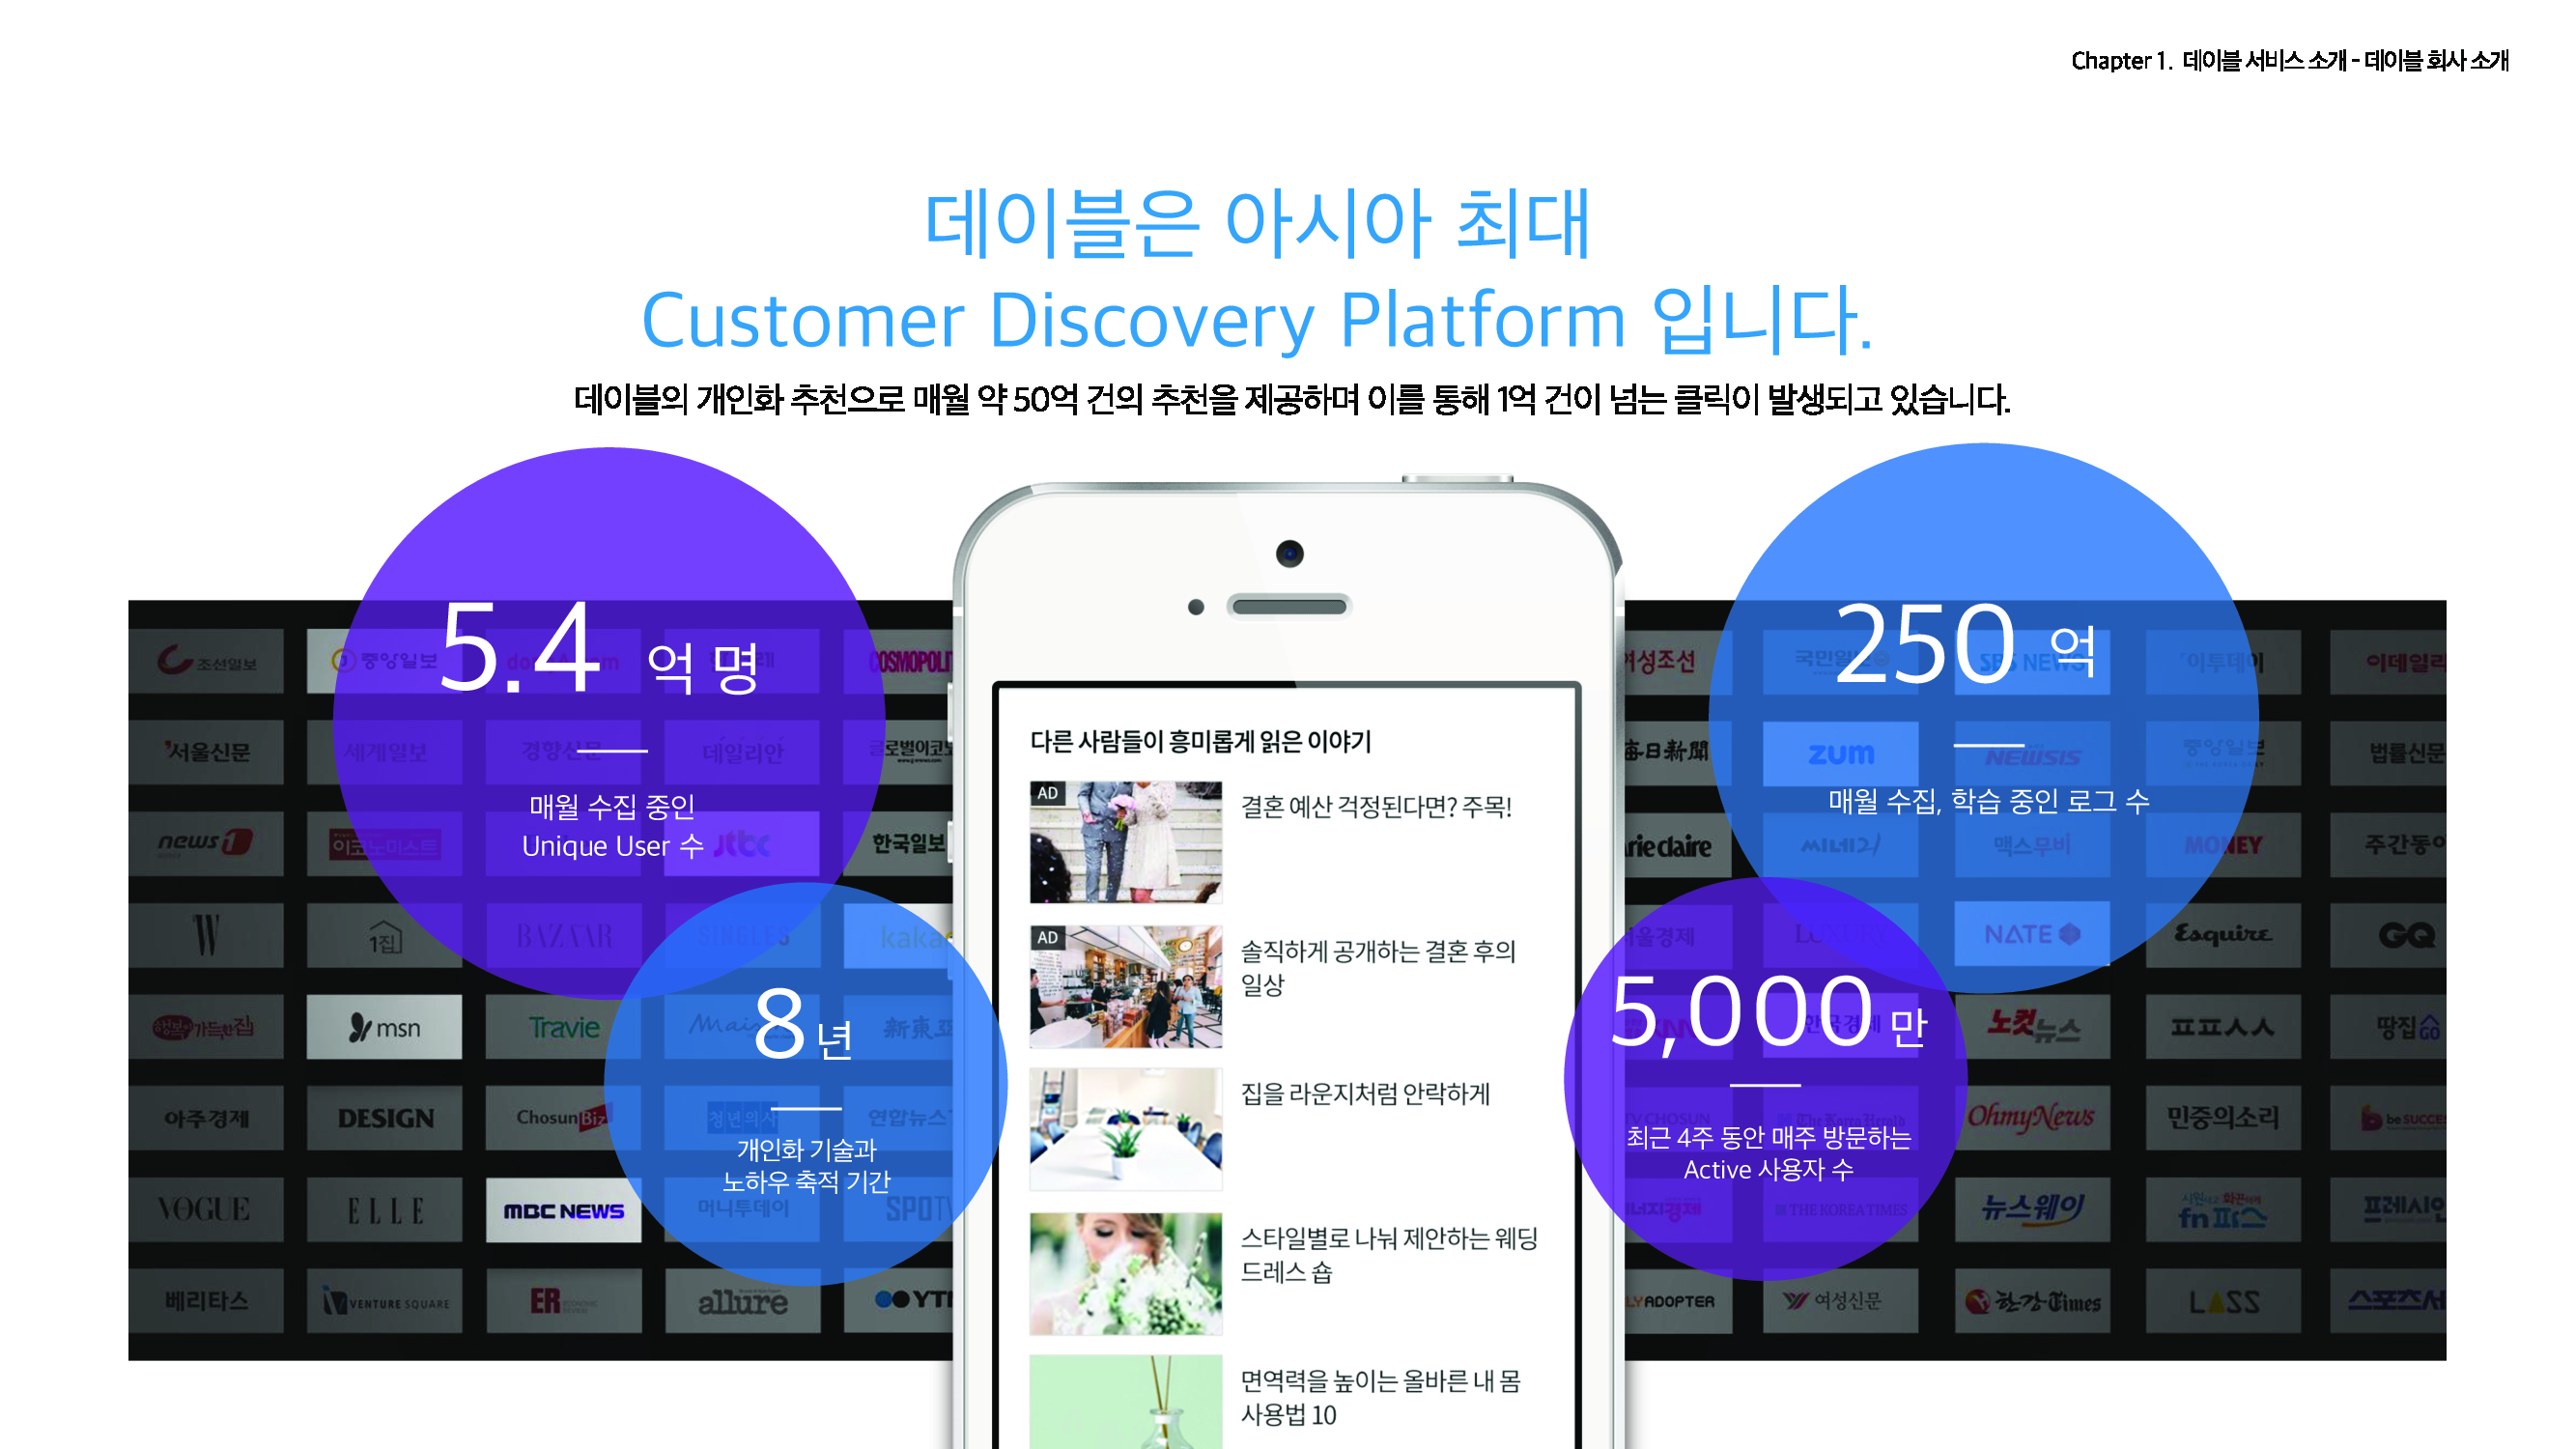 데이블은 아시아 최대 Customer Discovery Platform 입니다